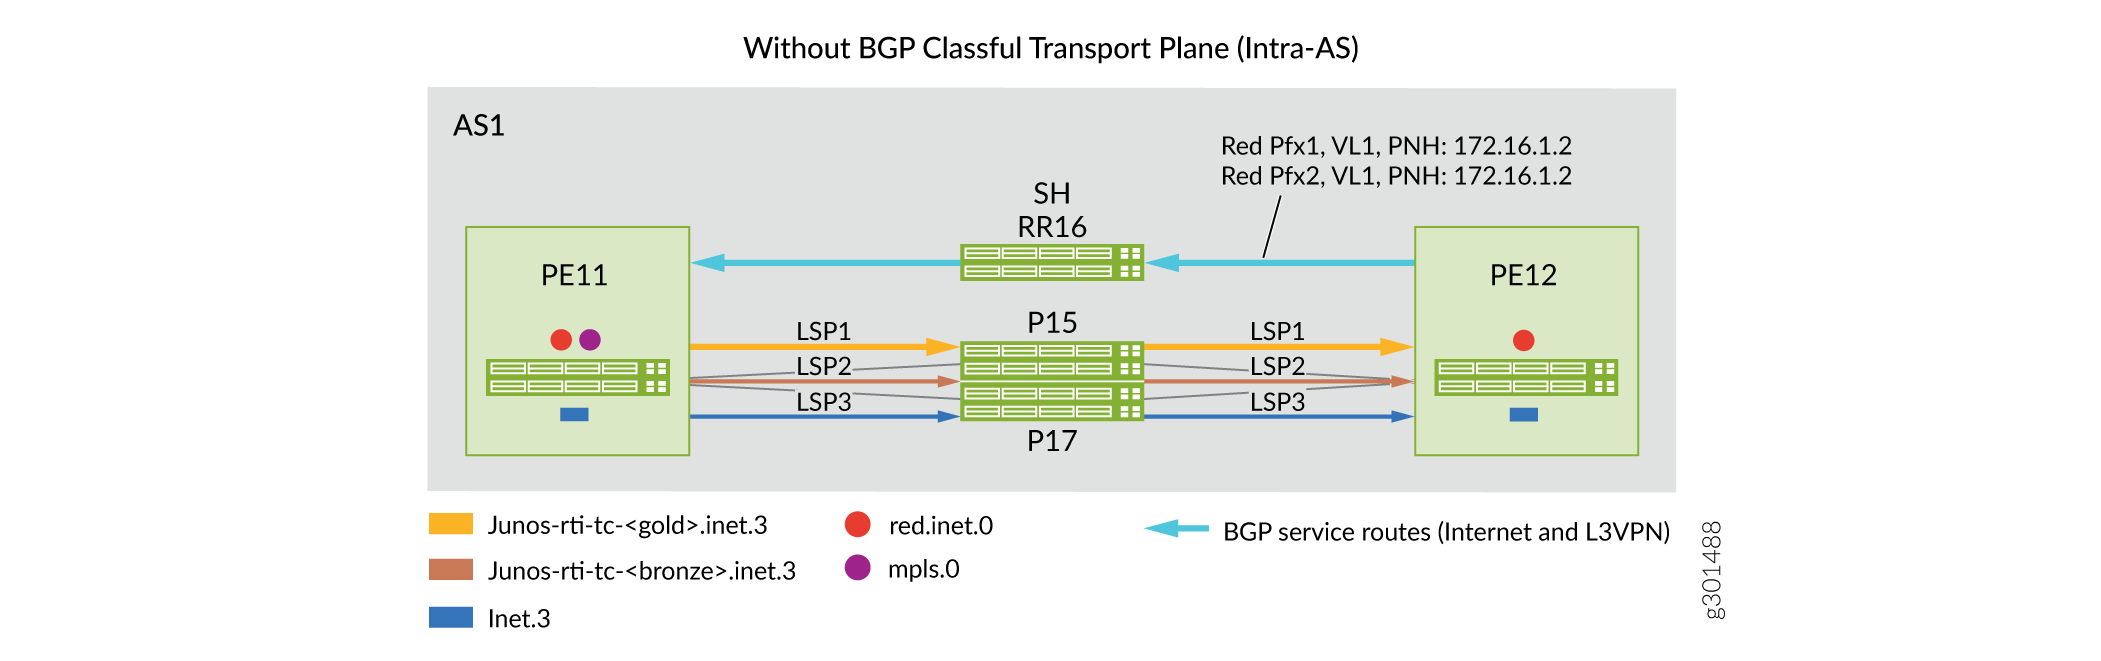 Domaine intra-AS : Scénarios avant/après pour l’implémentation de plans de transport avec classe BGP